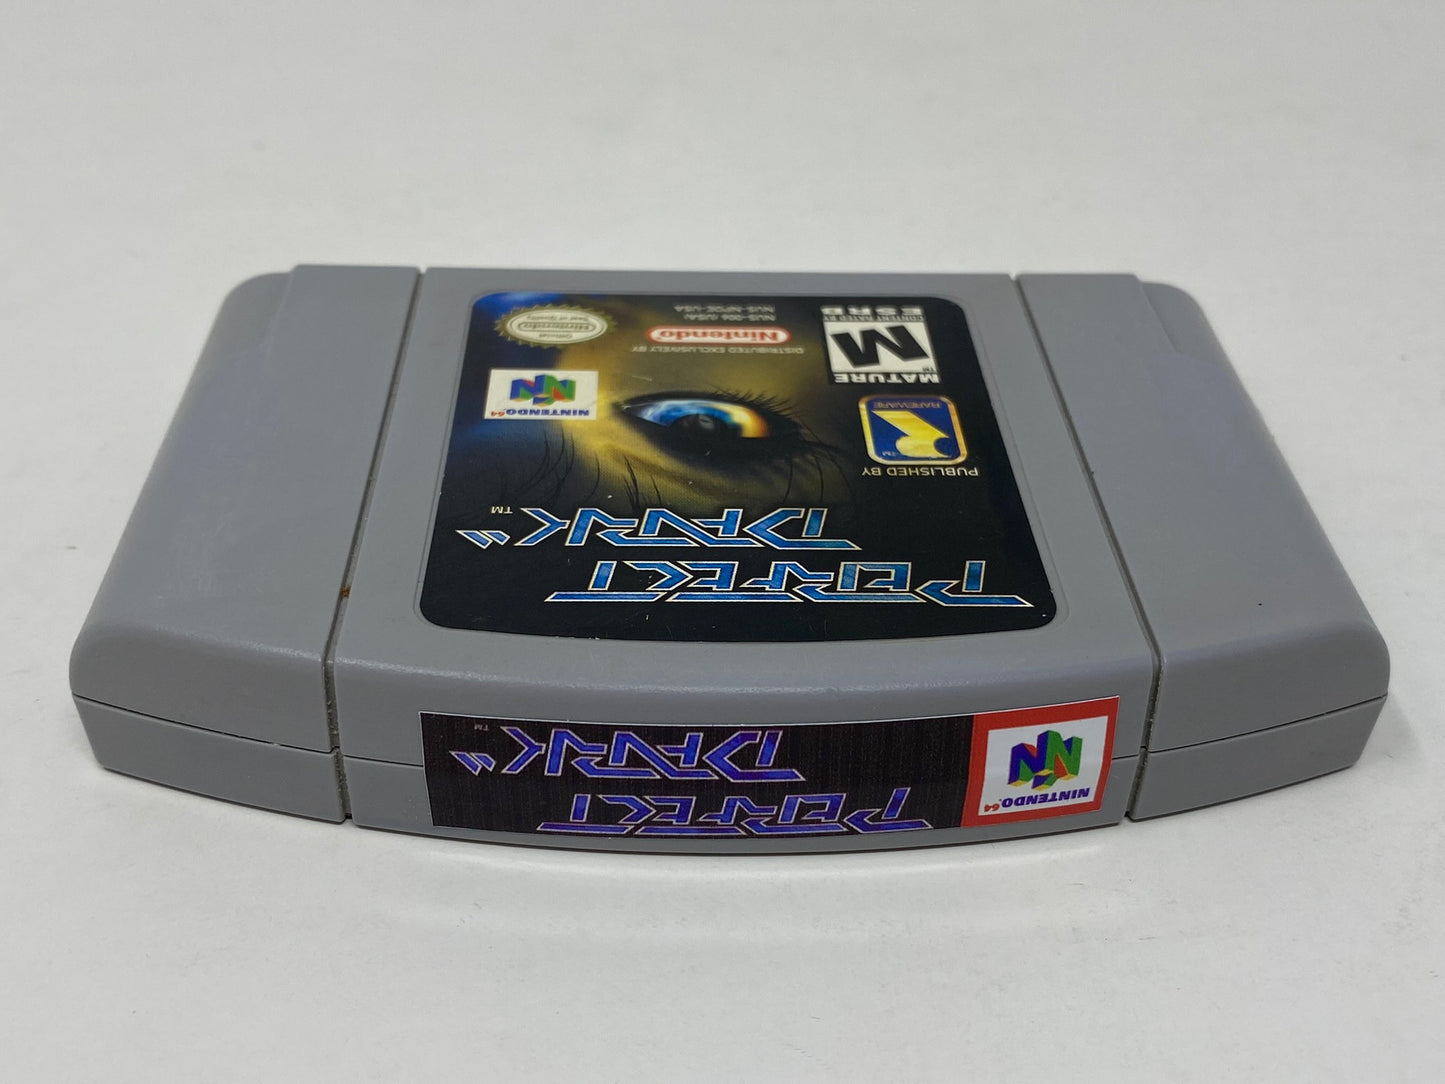 N64 Nintendo 64 - Perfect Dark